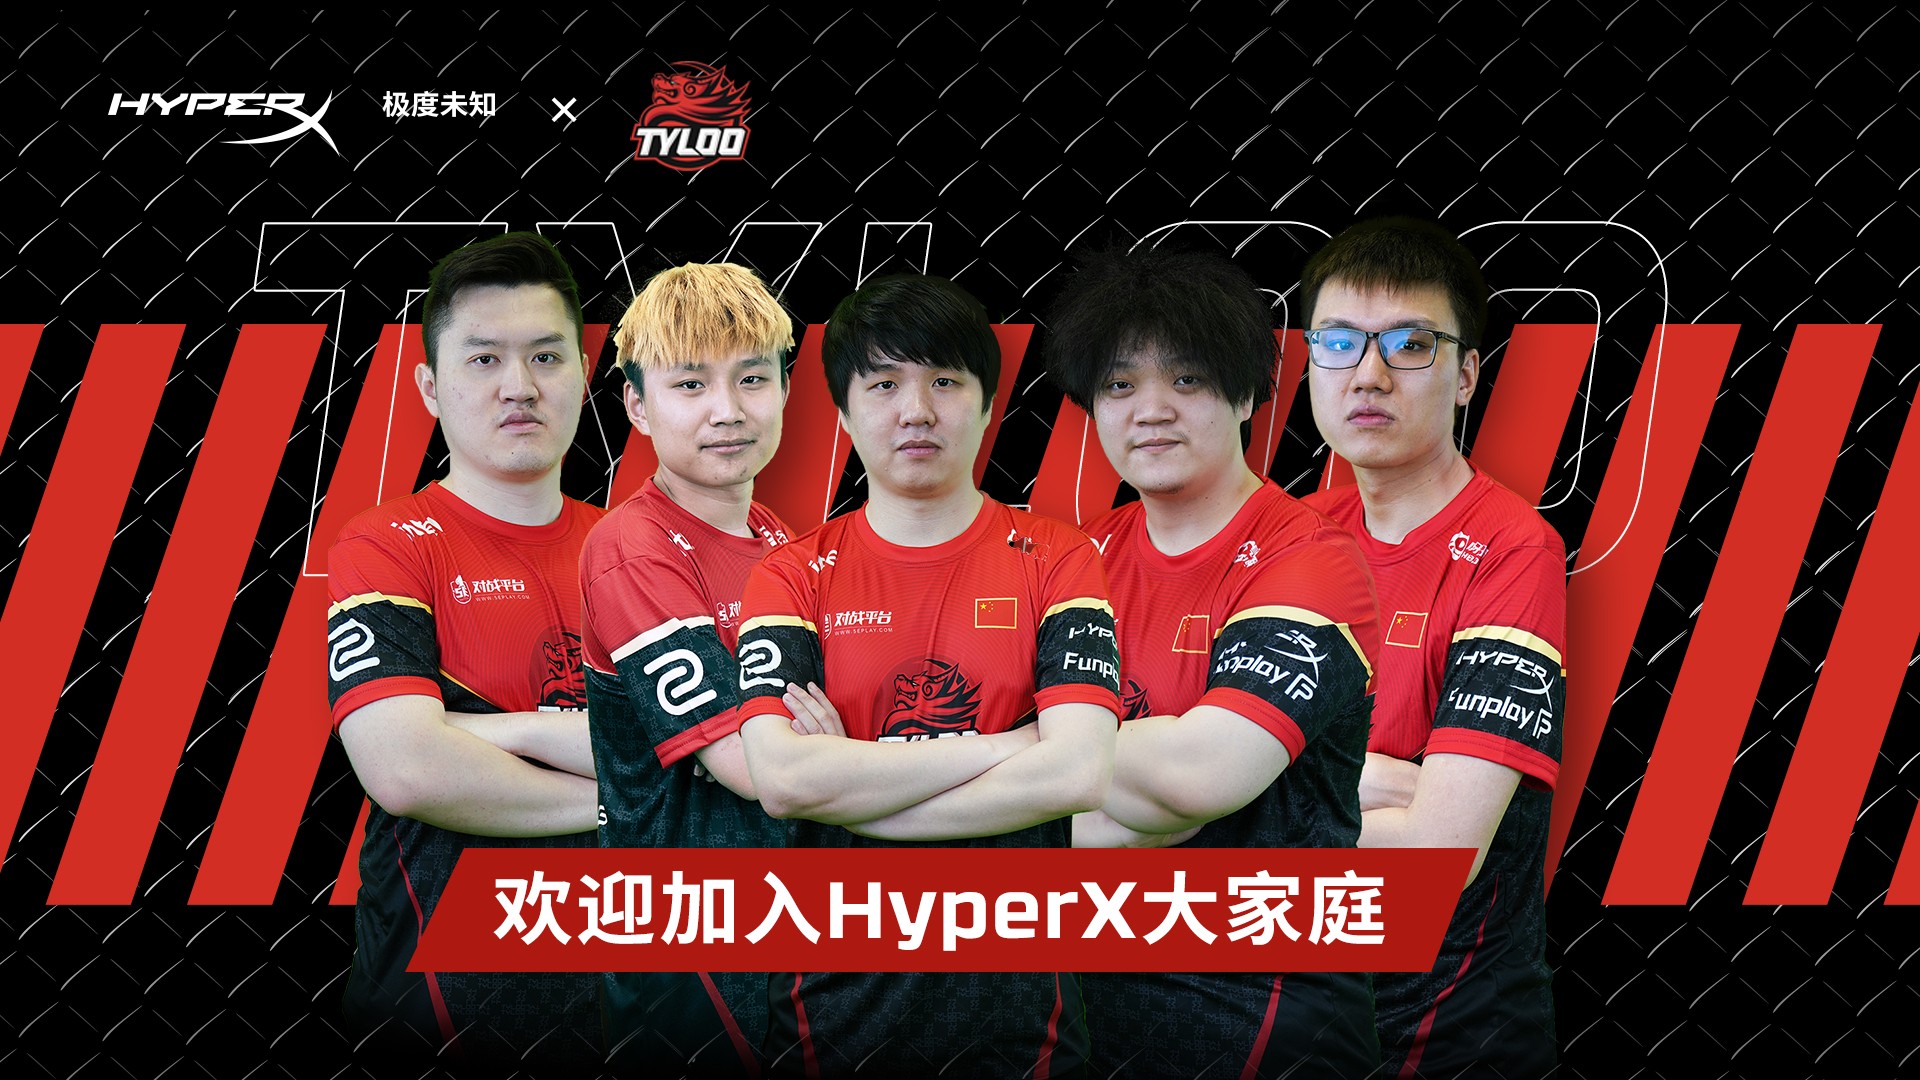 HyperX与天禄电子竞技俱乐部达成合作 